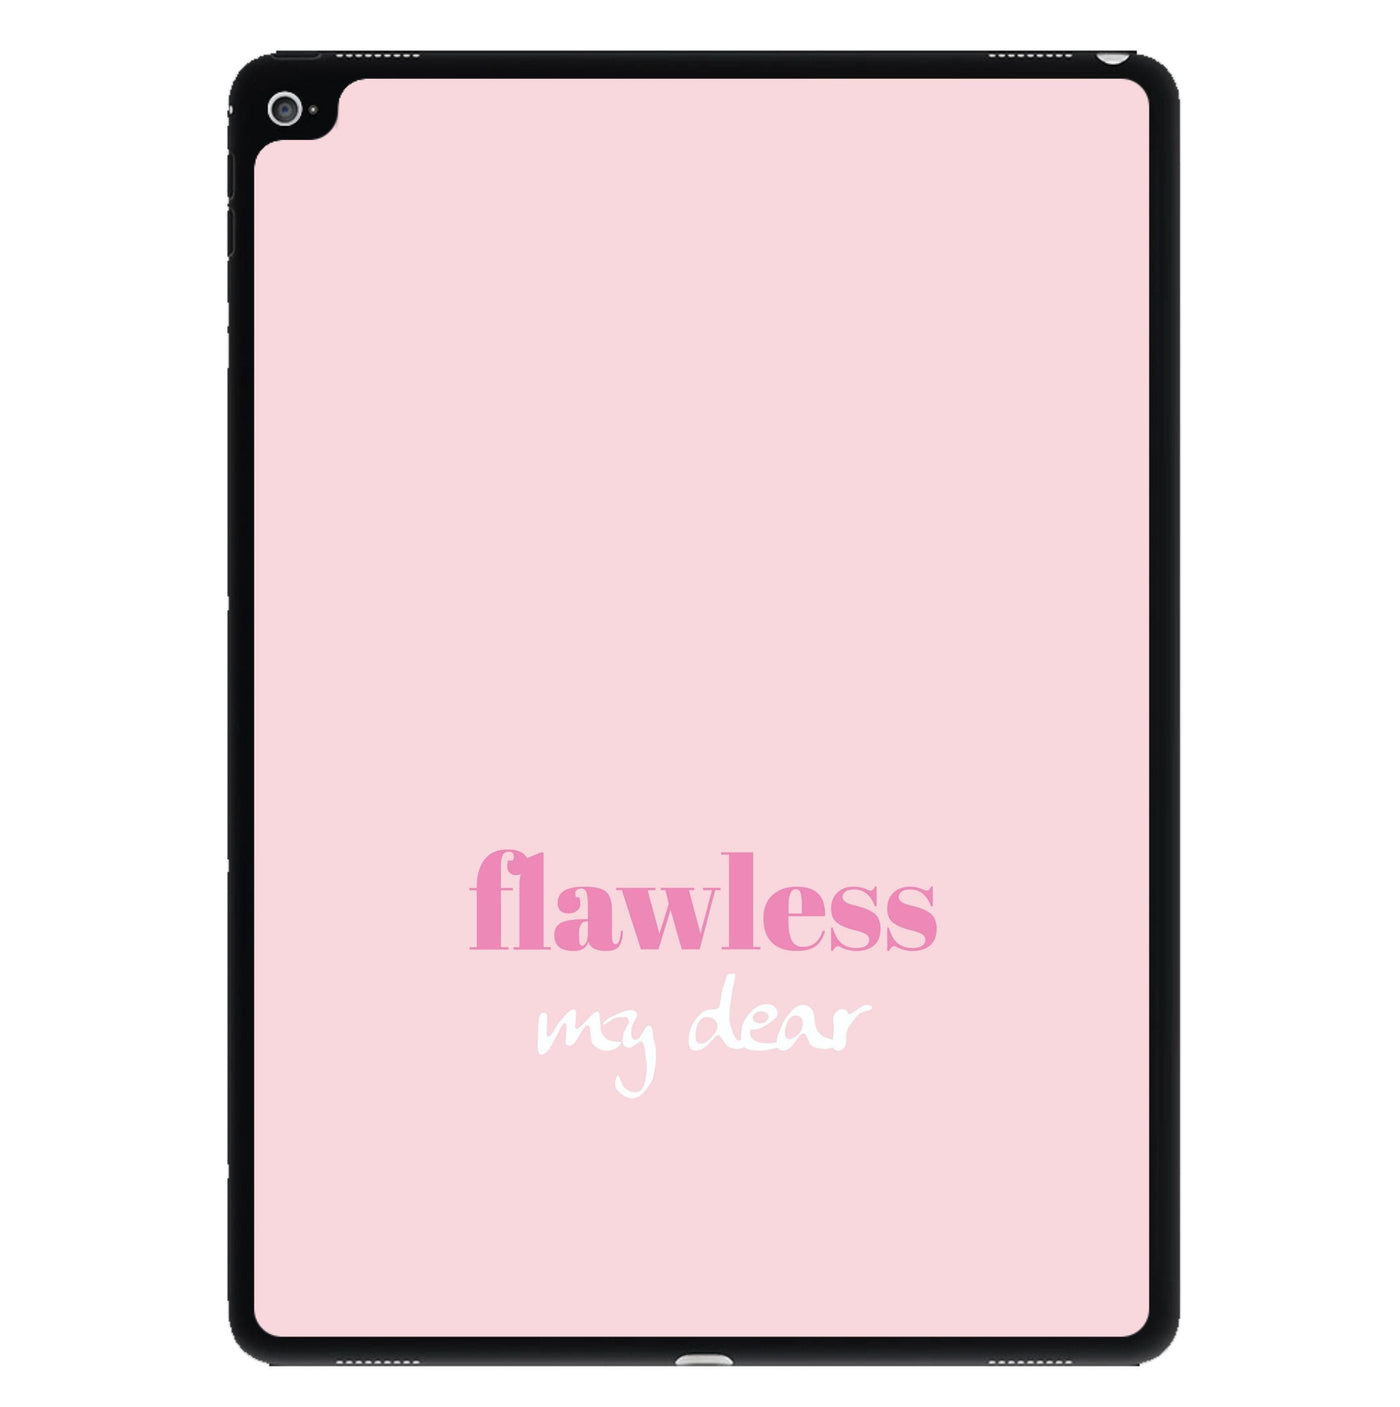 Flawless My Dear - Queen Charlotte iPad Case